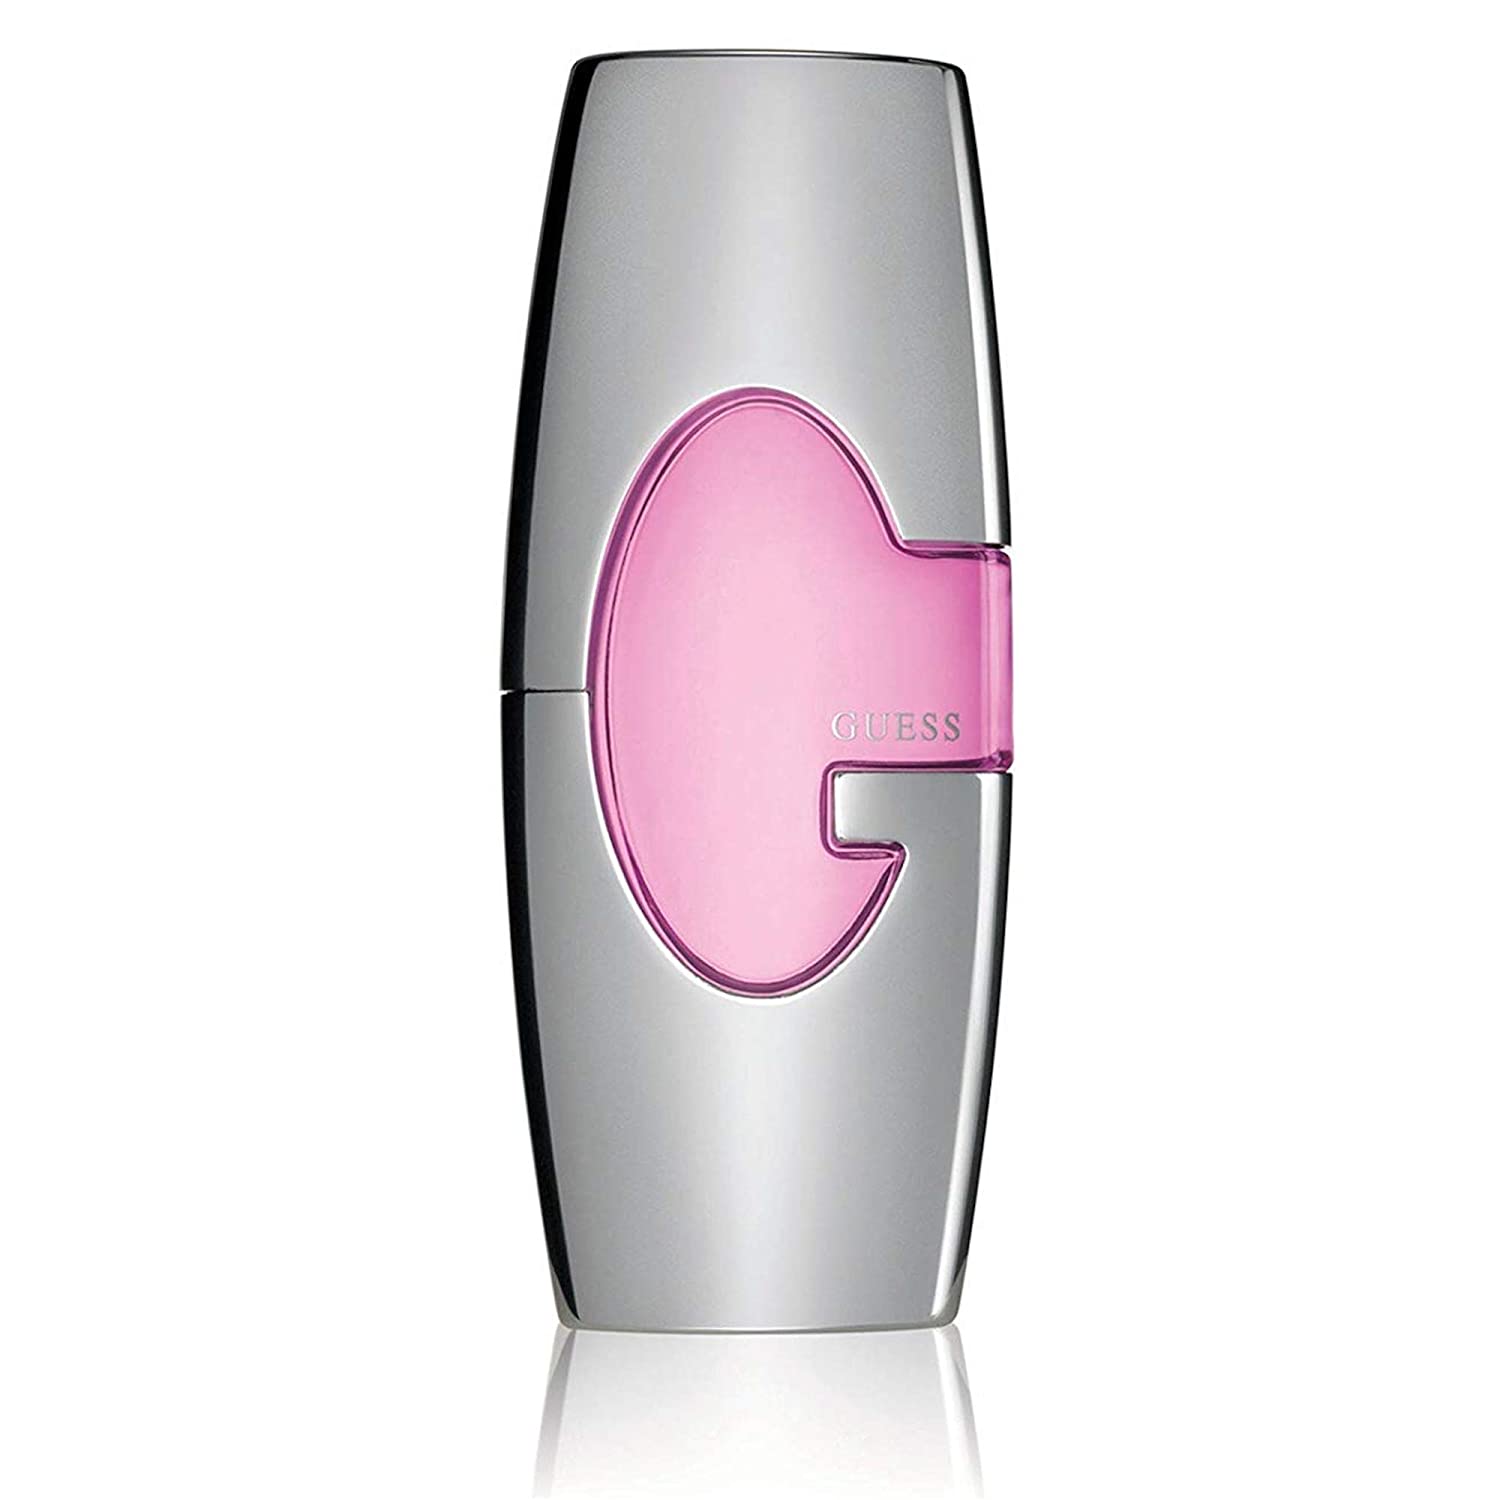 Guess Eau de Parfum Spray for Women (75ml) Guess